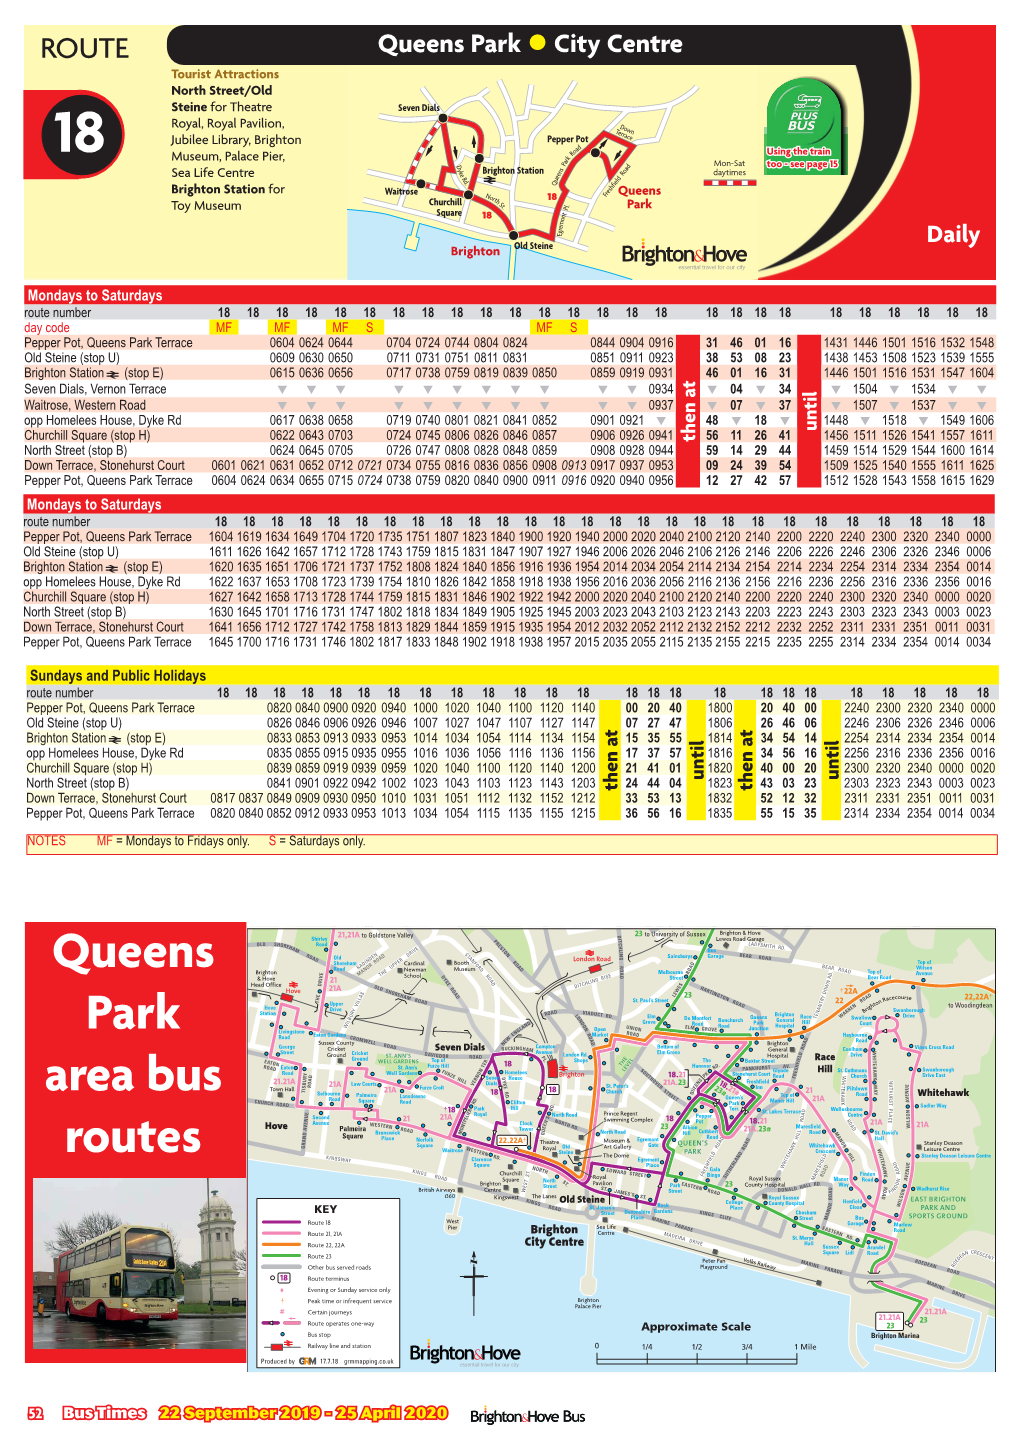 Queens Park Area Bus Routes